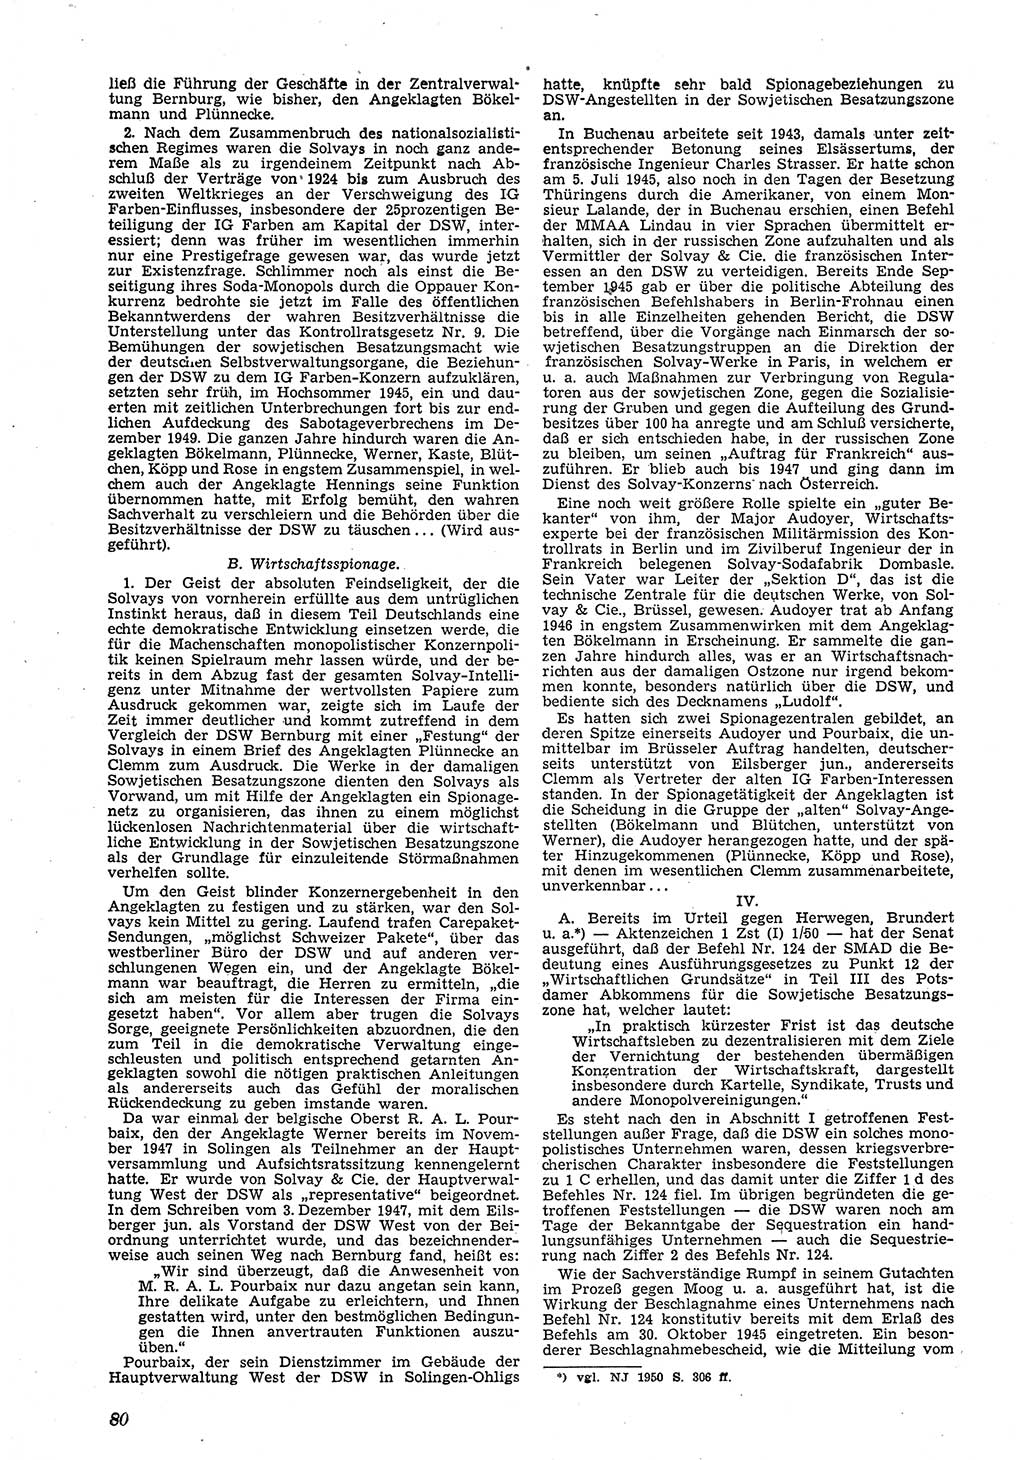 Neue Justiz (NJ), Zeitschrift für Recht und Rechtswissenschaft [Deutsche Demokratische Republik (DDR)], 5. Jahrgang 1951, Seite 80 (NJ DDR 1951, S. 80)